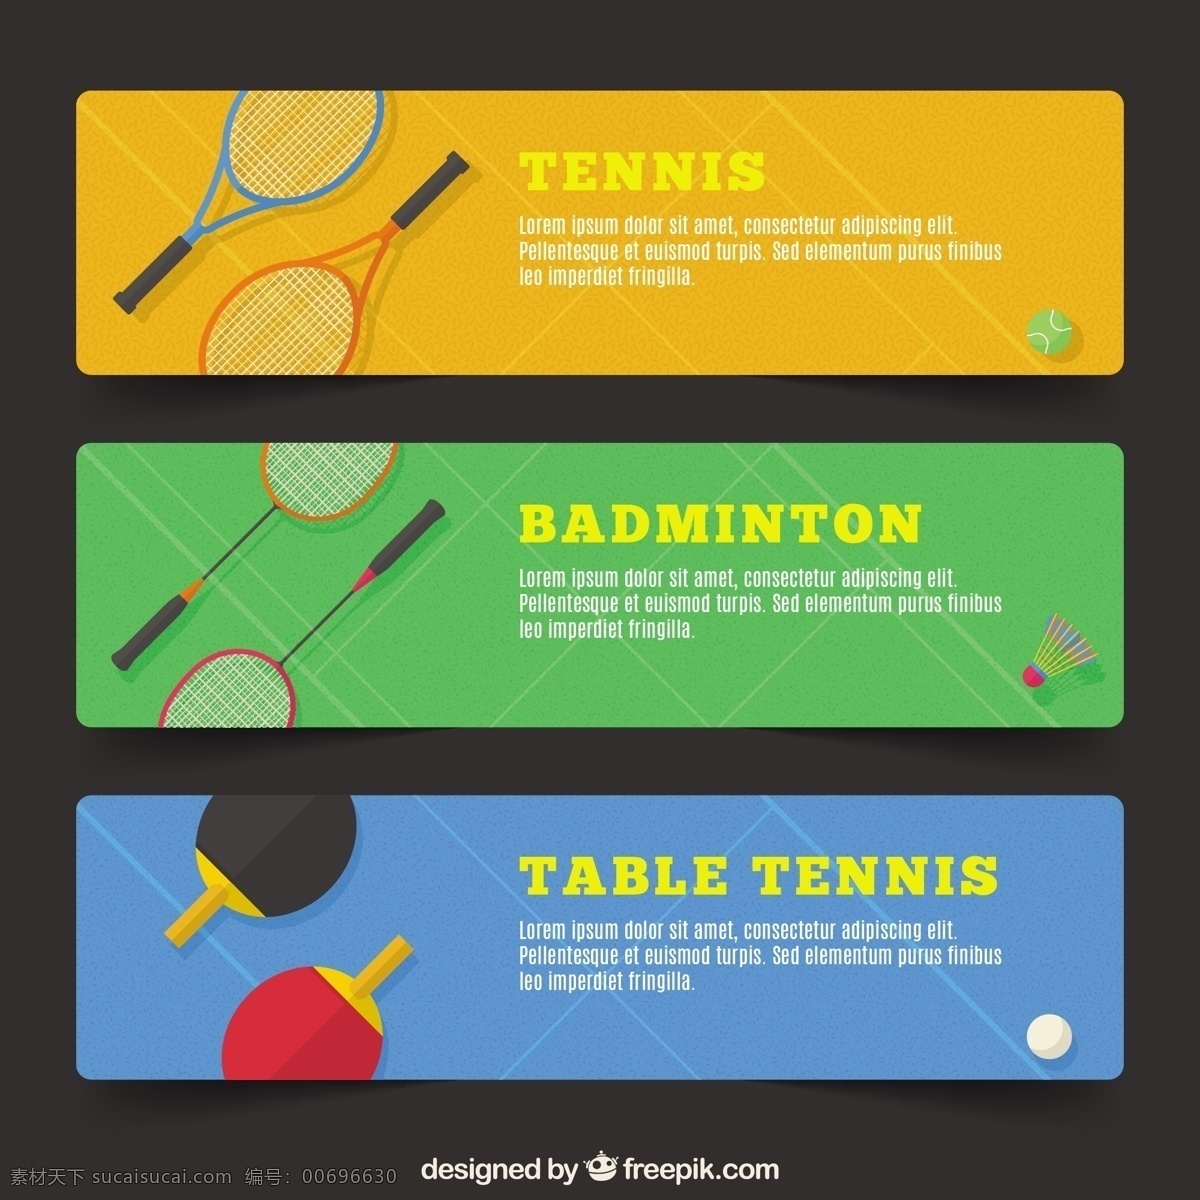 网球横幅 横幅 体育 健身 健康 表 平 网球 平面 运动 训练 羽毛球 生活方式 适合彩色横幅